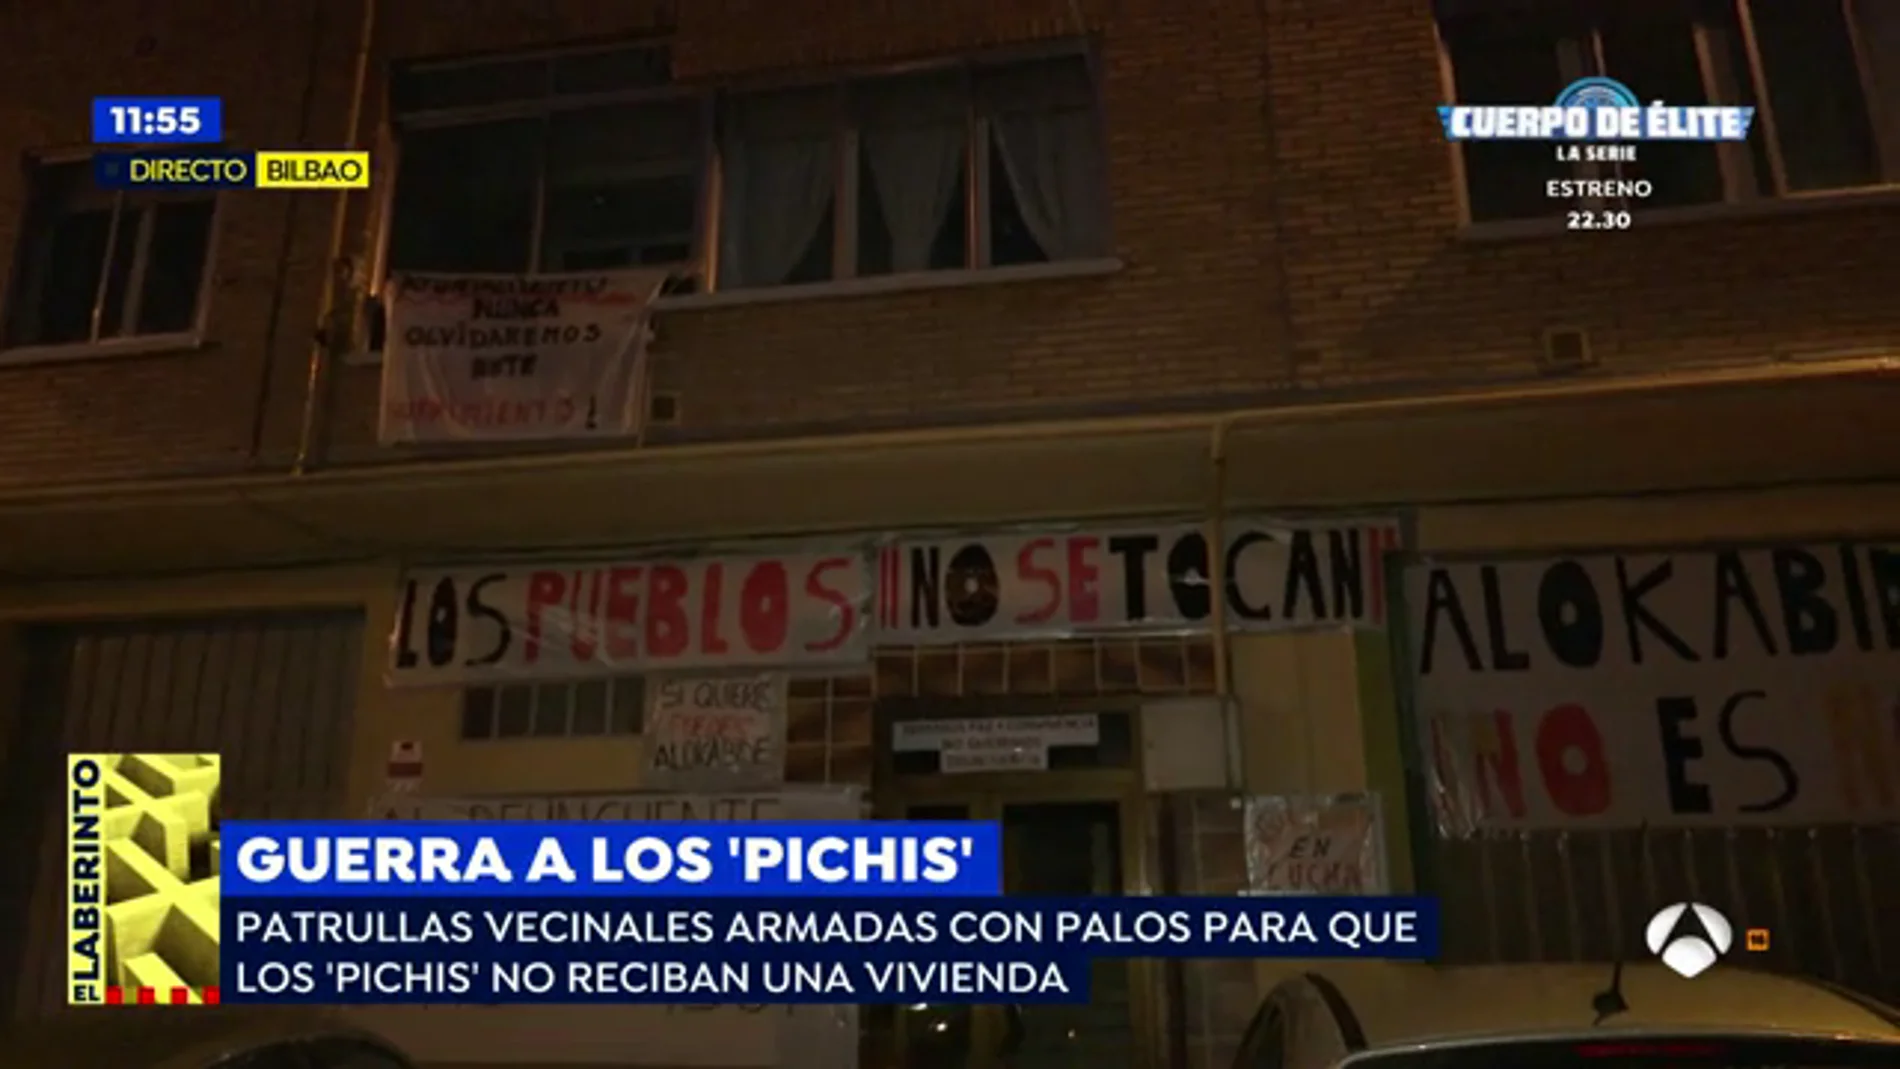  Los vecinos de un barrio de Vitoria están en pie de guerra porque no quieren que Los 'Pichis' vivan en la zona: 